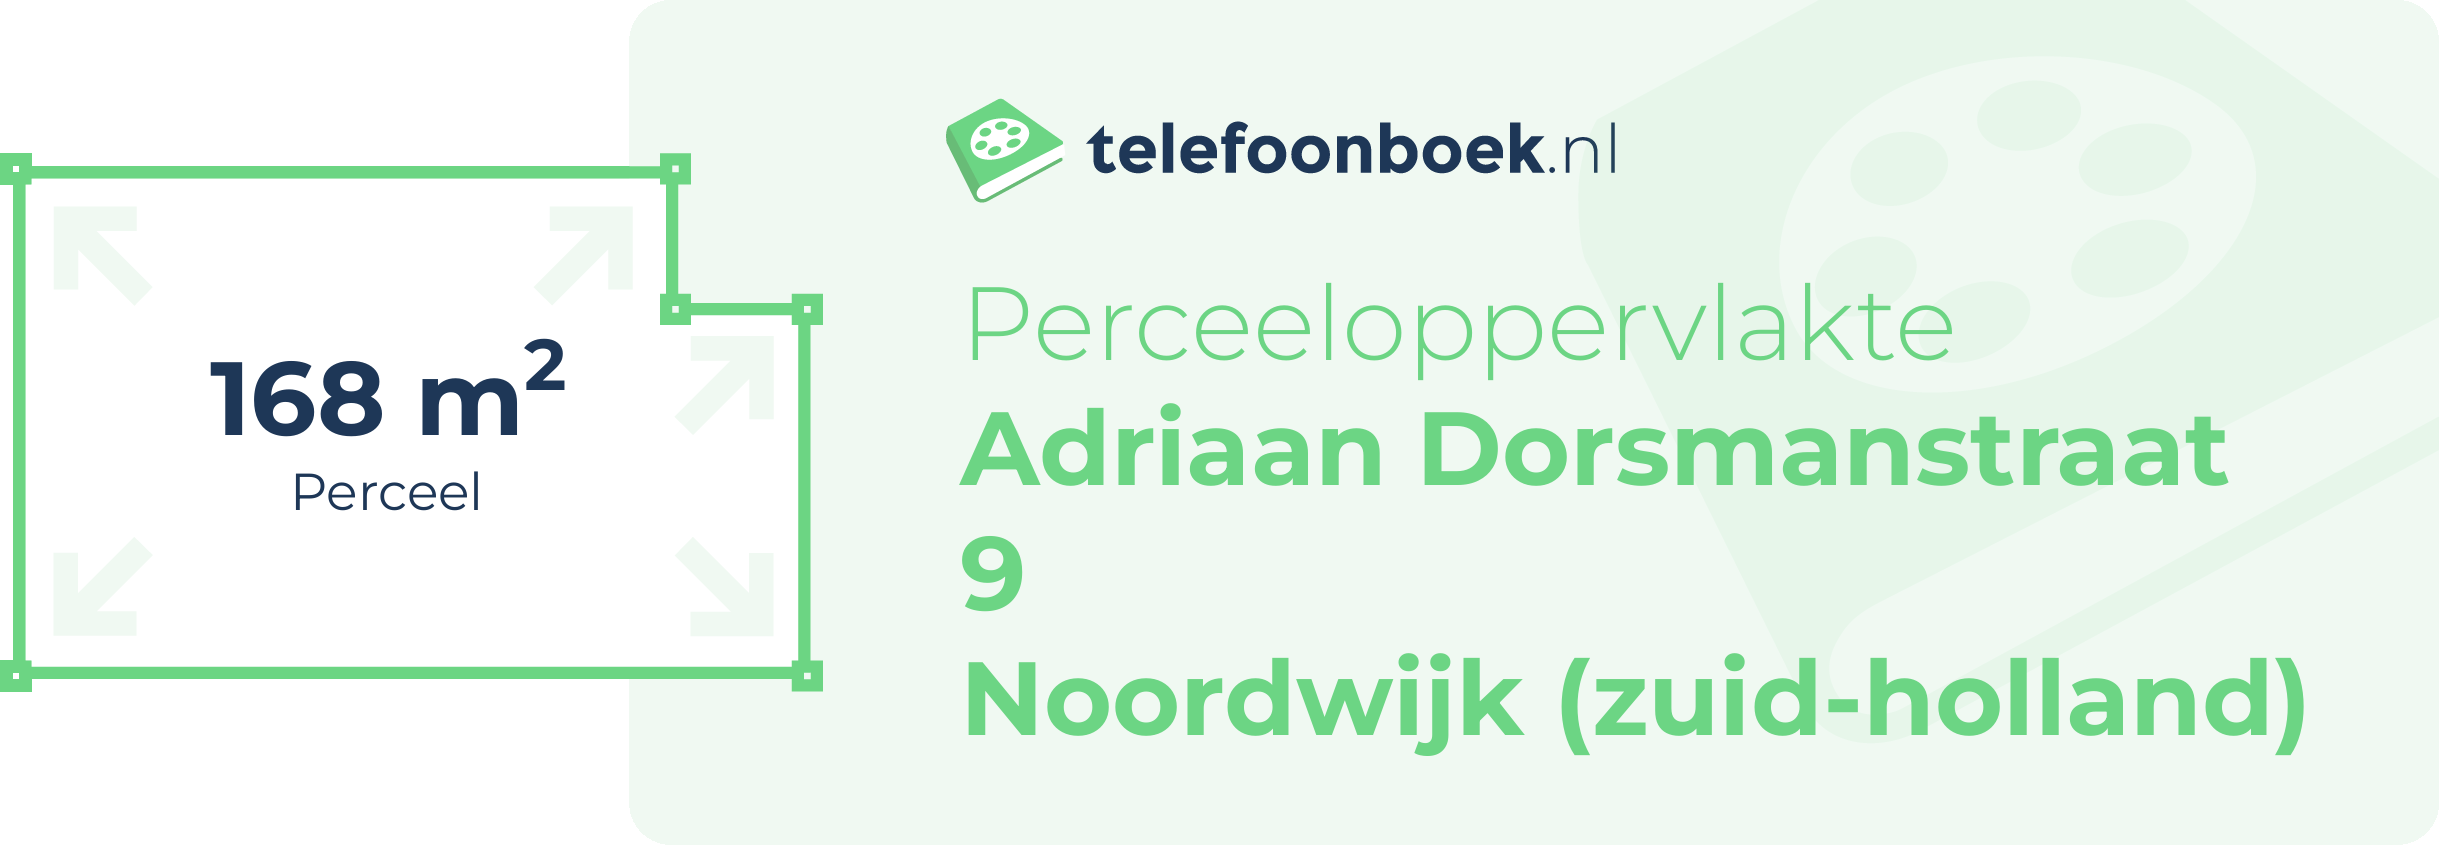 Perceeloppervlakte Adriaan Dorsmanstraat 9 Noordwijk (Zuid-Holland)